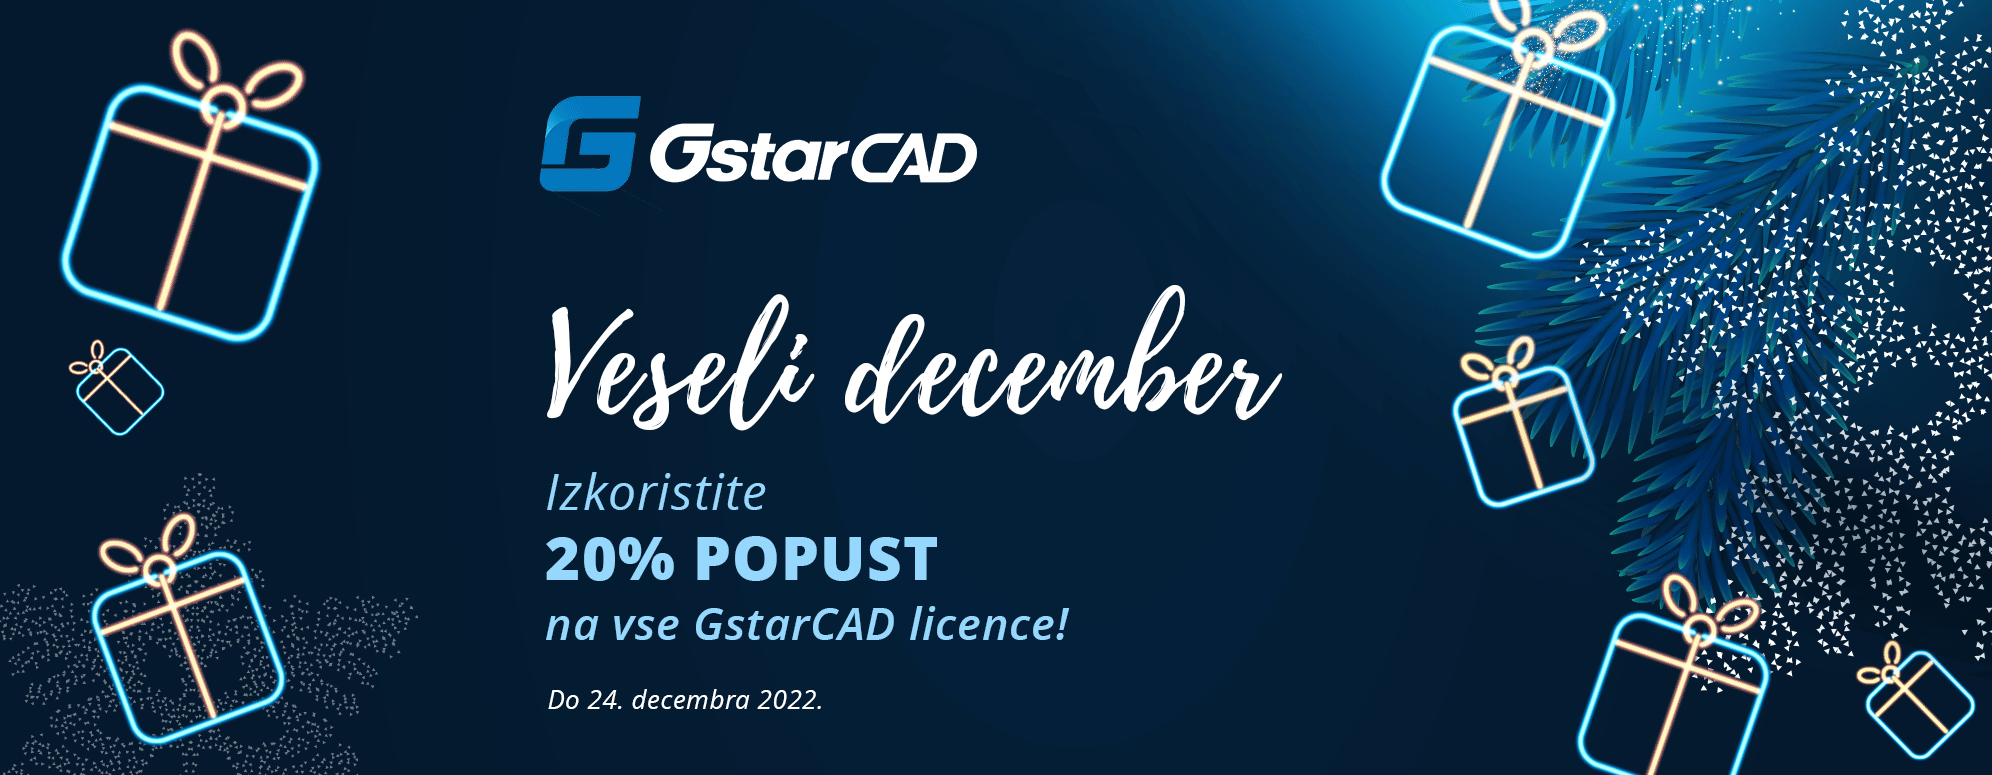 Gstarcad - Veseli December Promocija